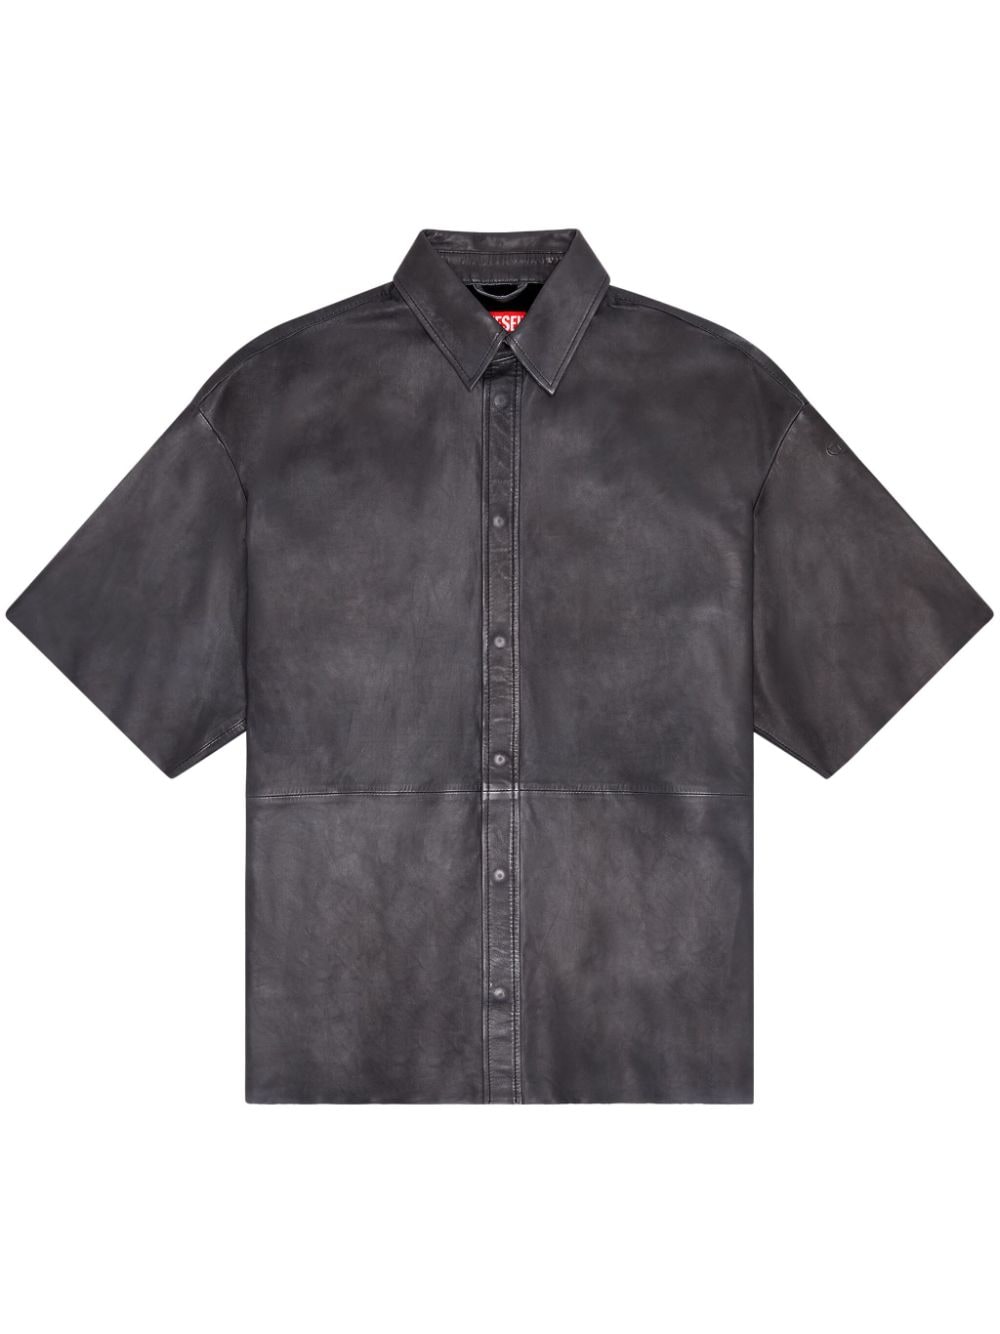 Diesel S-EMIN-LTH leather shirt - Black von Diesel